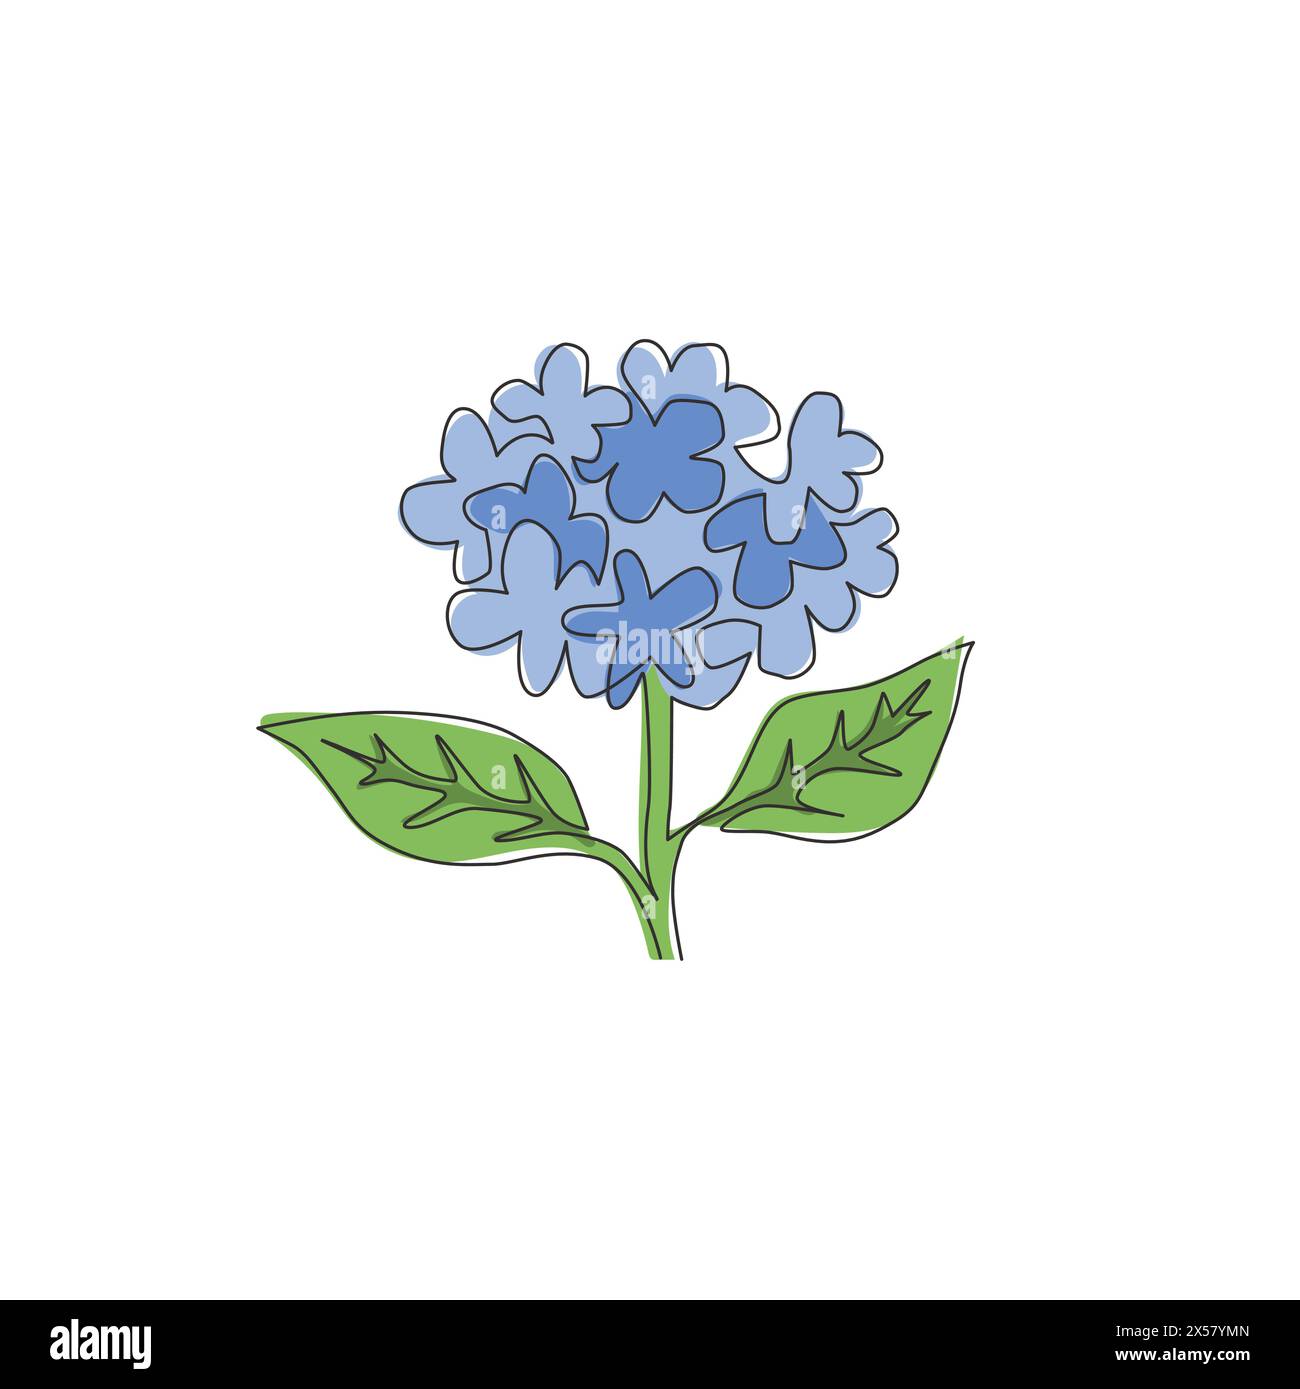 Simple dessin d'une ligne de beauté Fresh hortensia pour le logo de jardin. Concept décoratif de fleur d'hortensia pour décoration murale maison d'art poster imprimé. Moderne co Illustration de Vecteur